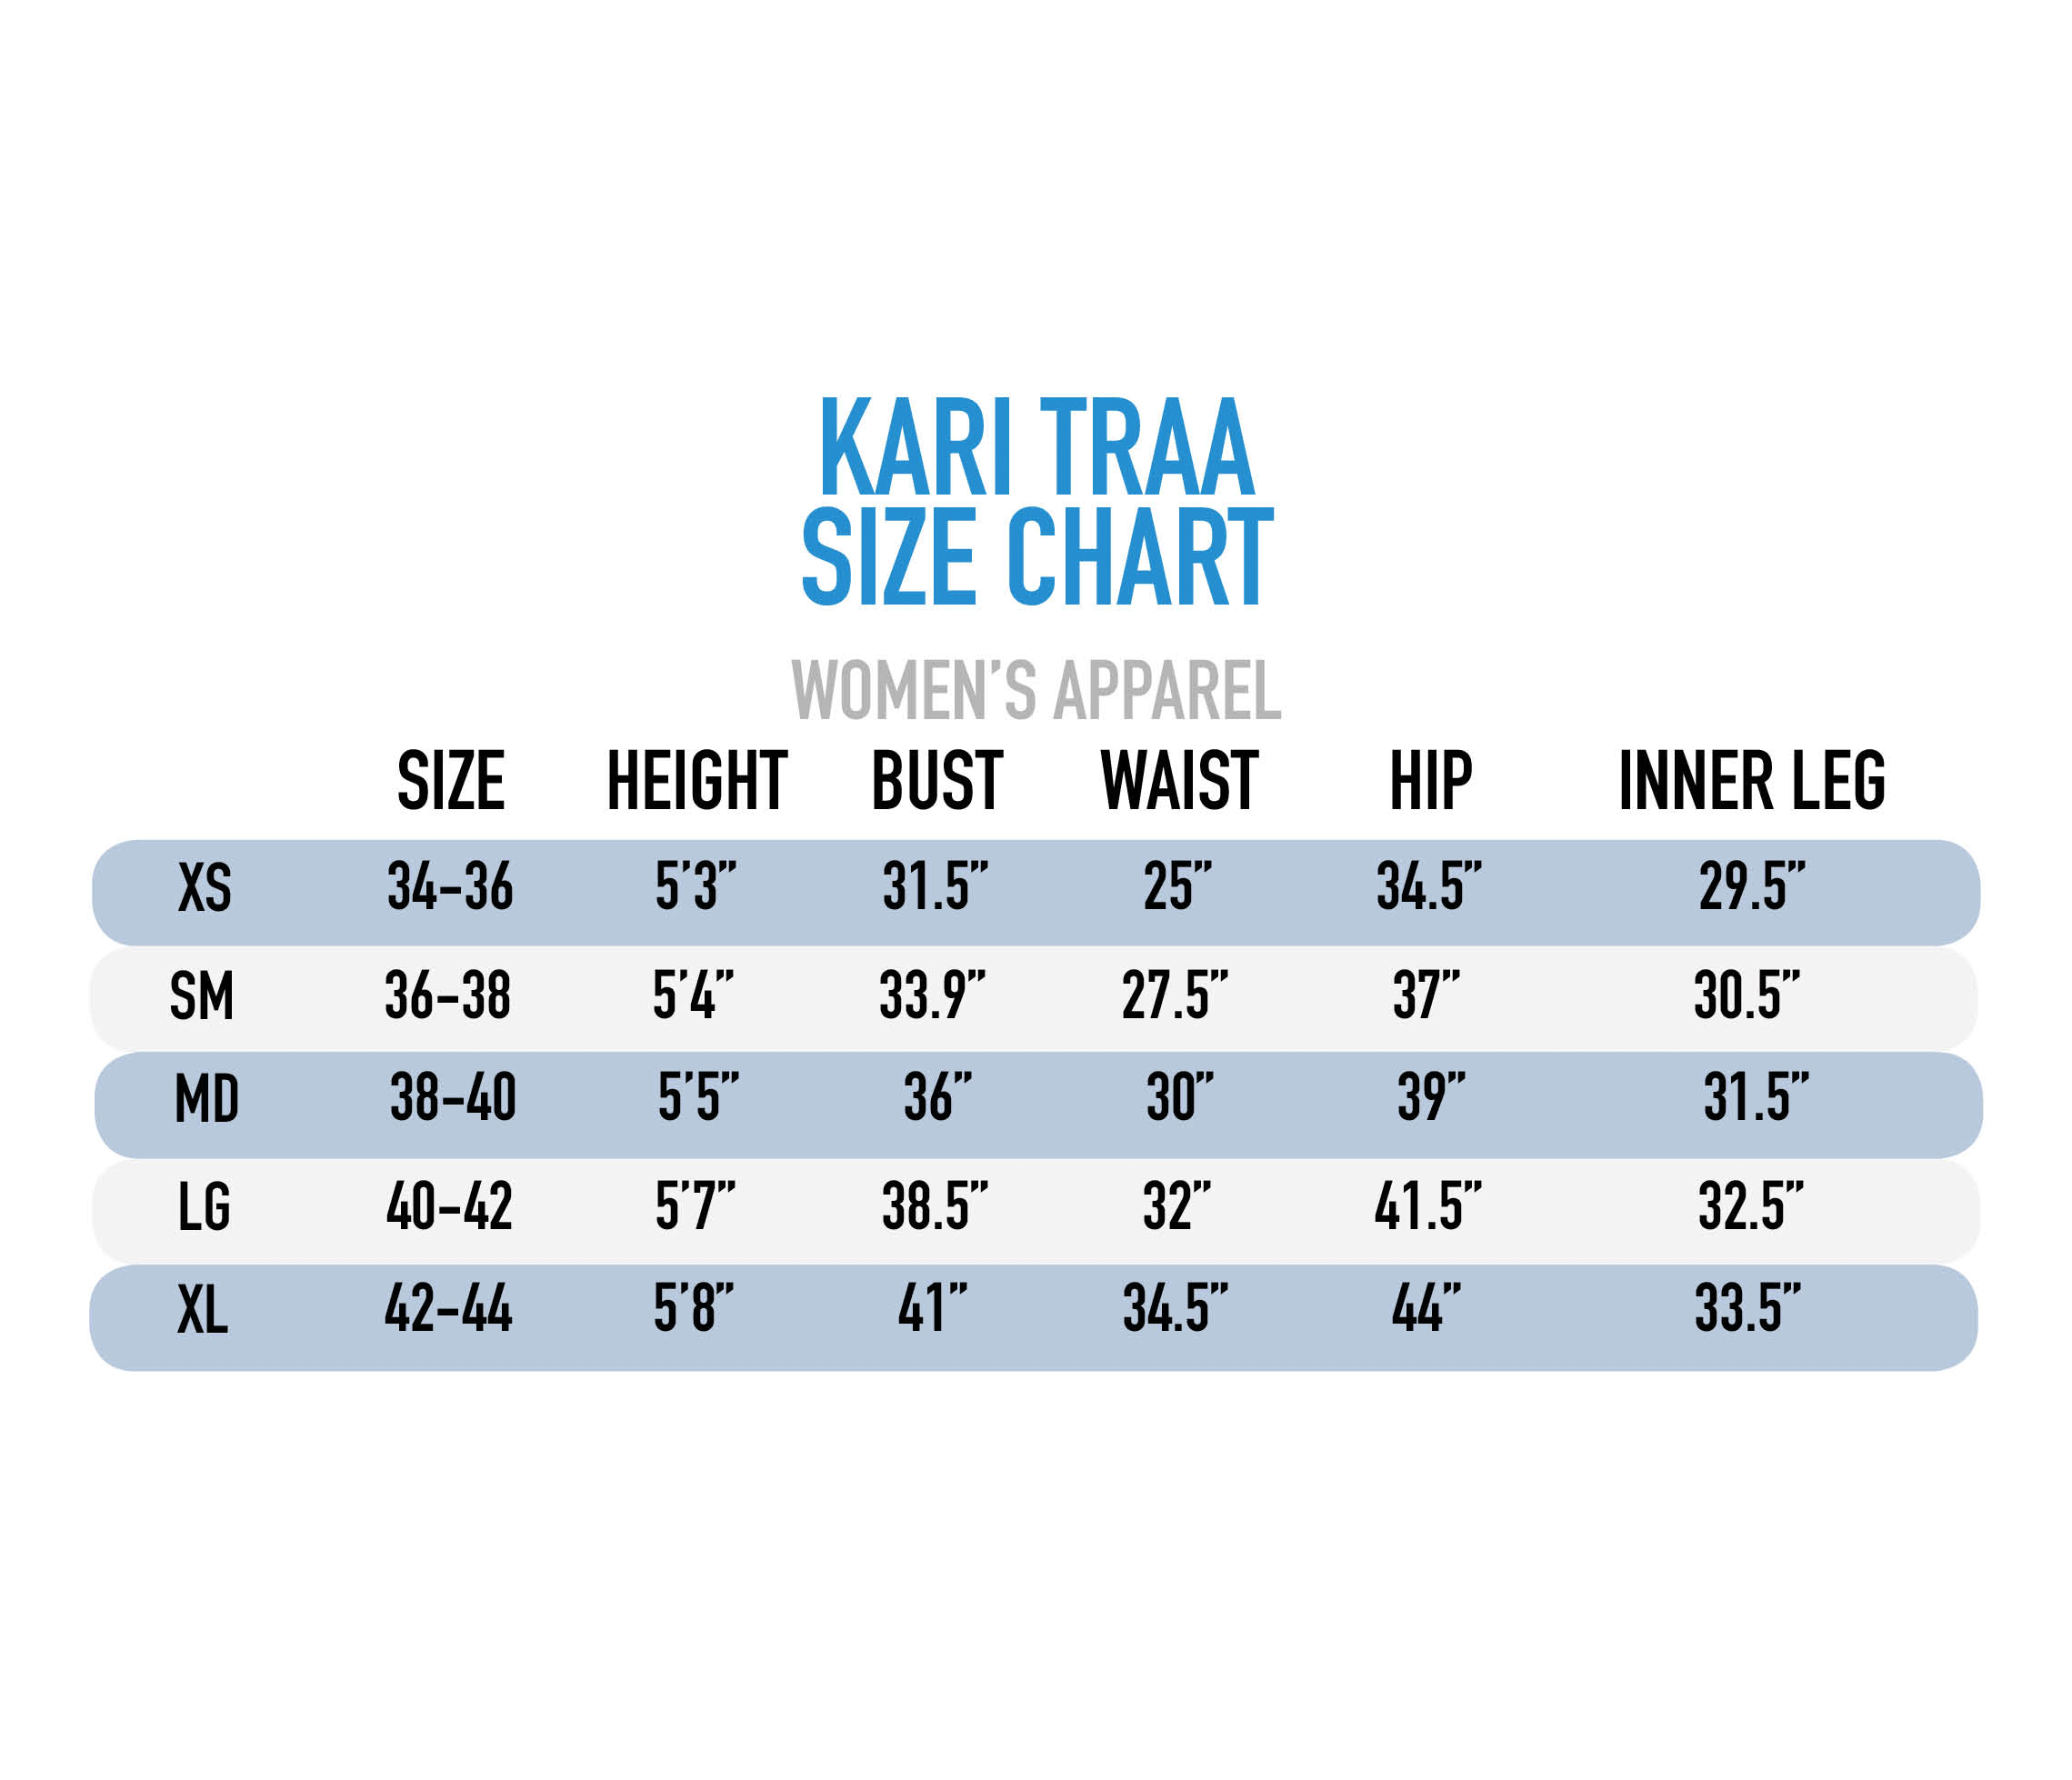 Kari Traa Size Chart